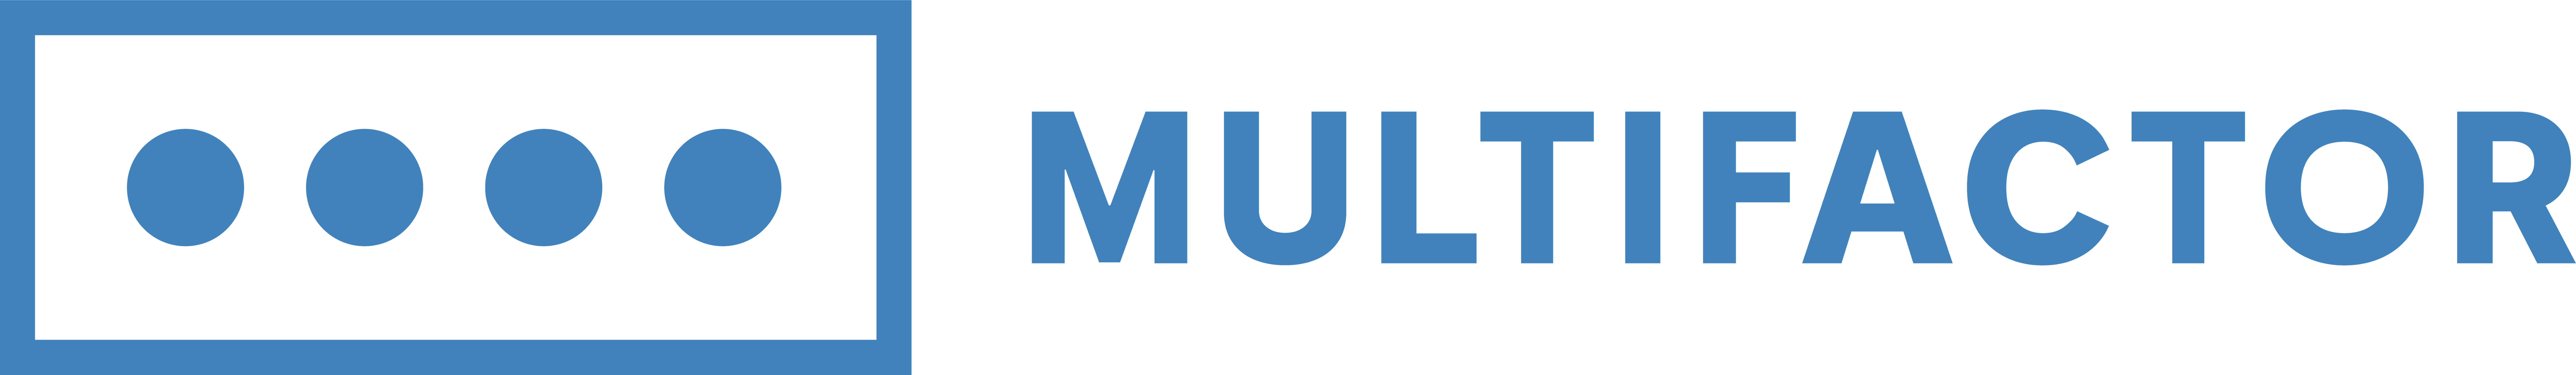 Система двухфакторной аутентификации и контроля доступа MULTIFACTOR совместима с устройствами  Рутокен ОТР и Рутокен MFA